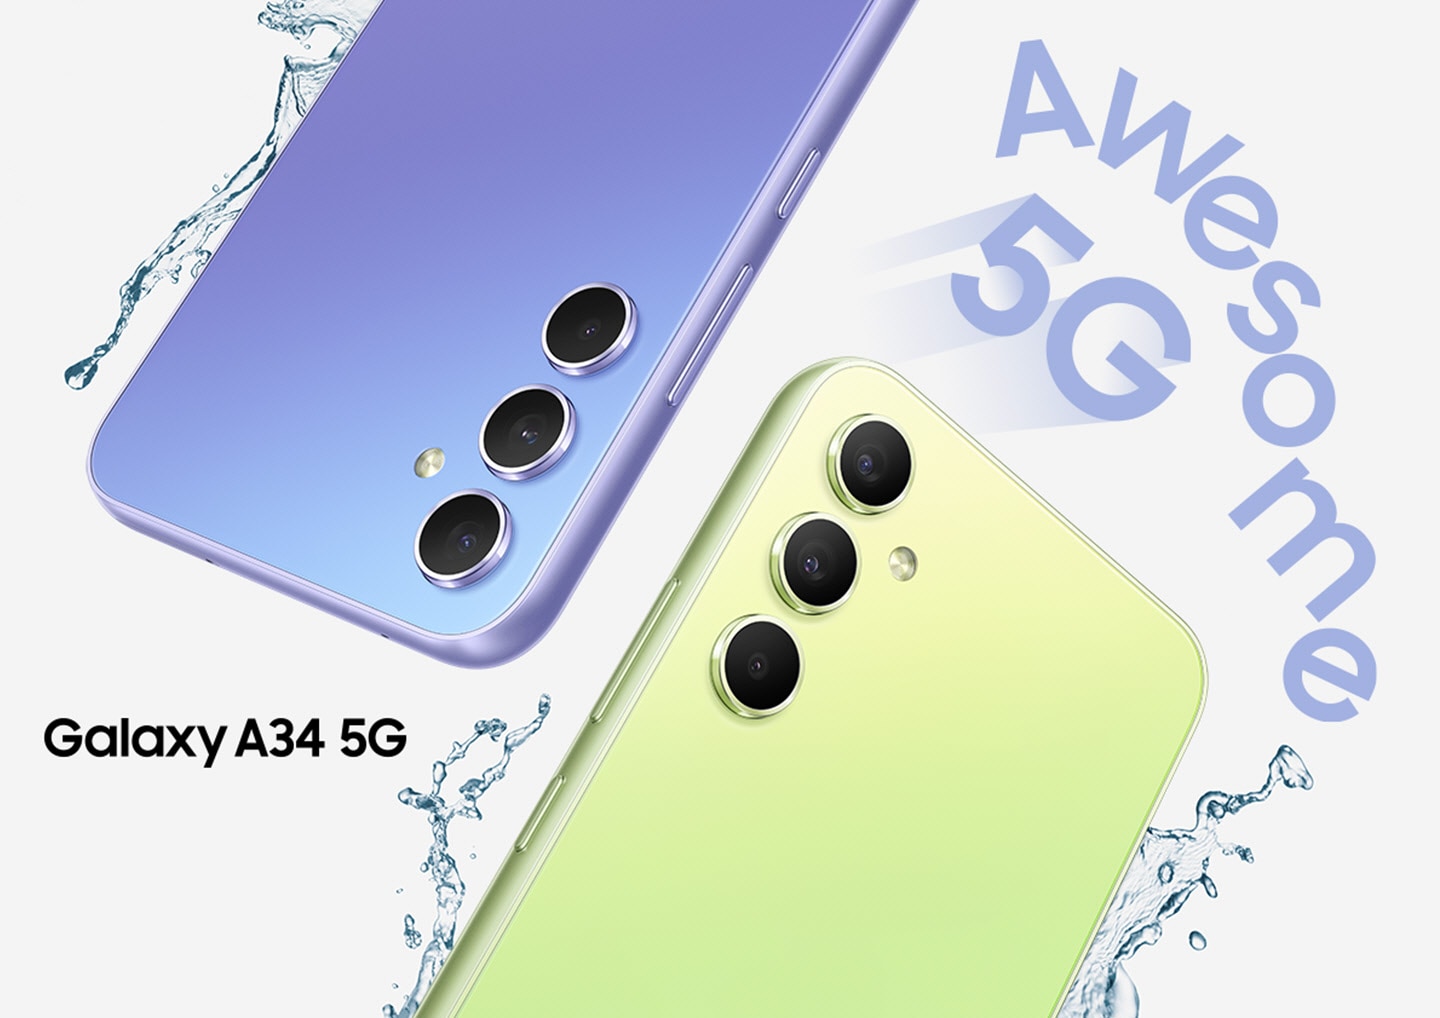 Dva Galaxy A34 5G pokazuju svoje gornje polovine stražnjih strana, jedan u boji Awesome ljubičasta, a drugi u boji Awesome limeta. Kapljice vode prskaju oko uređaja "Awesome 5G". 